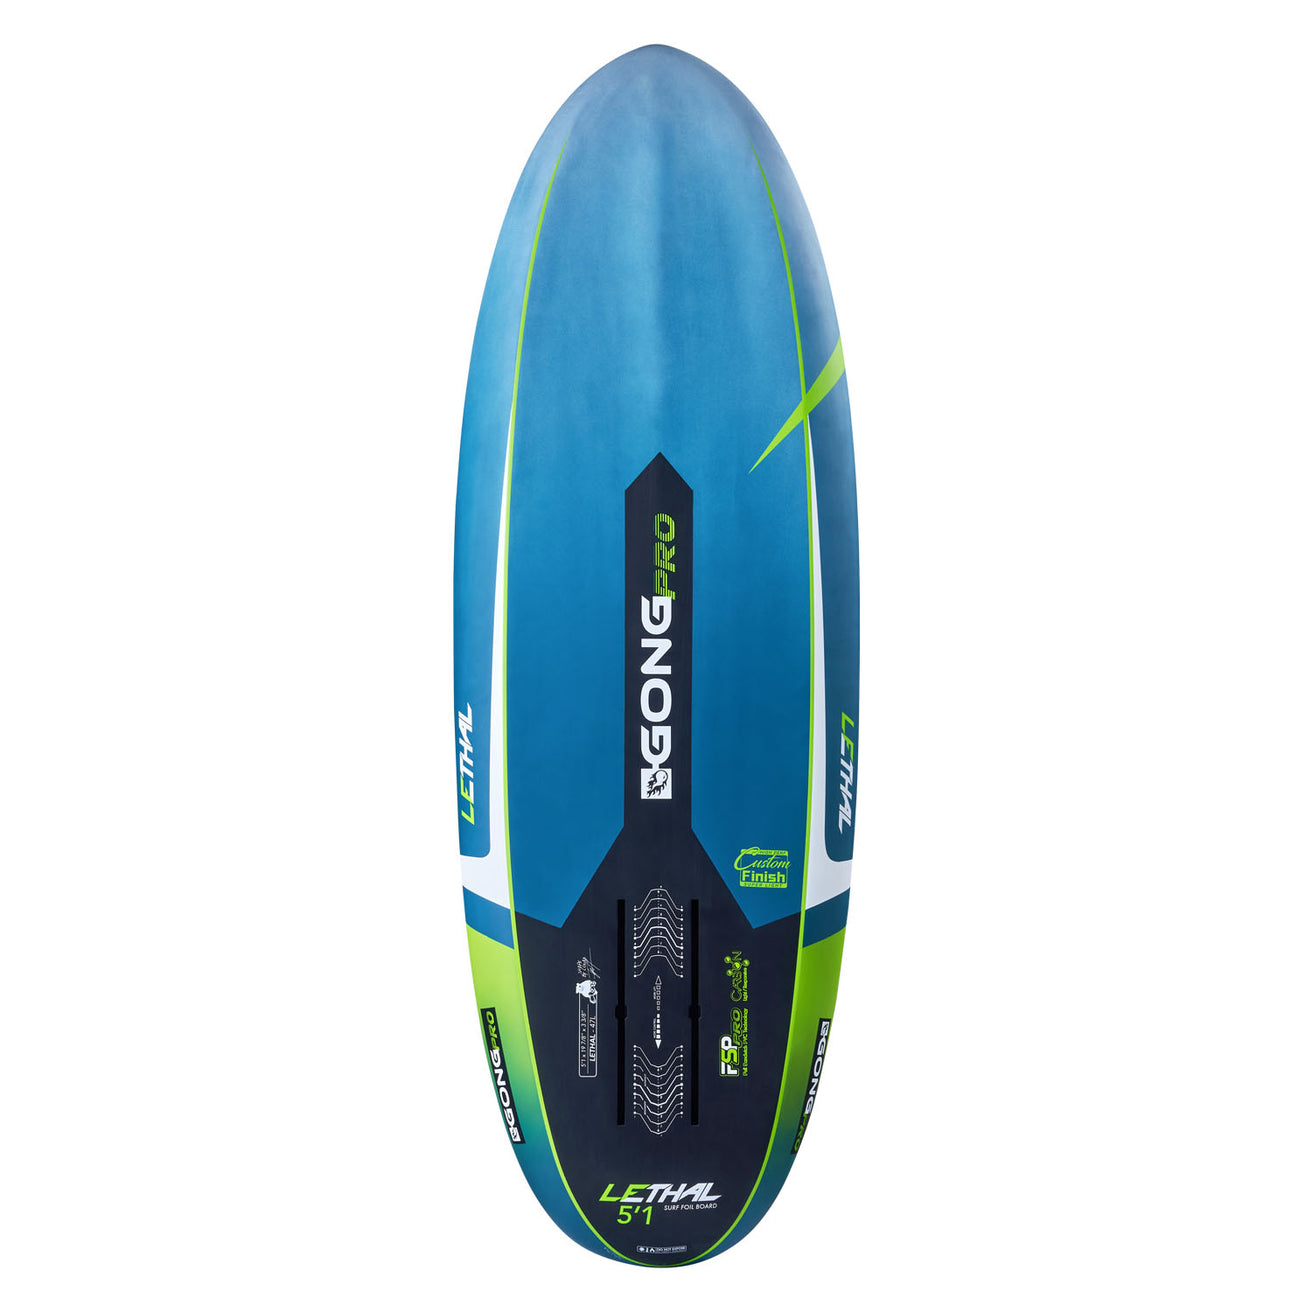 GONG | Surf Foil Board Lethal FSP Pro